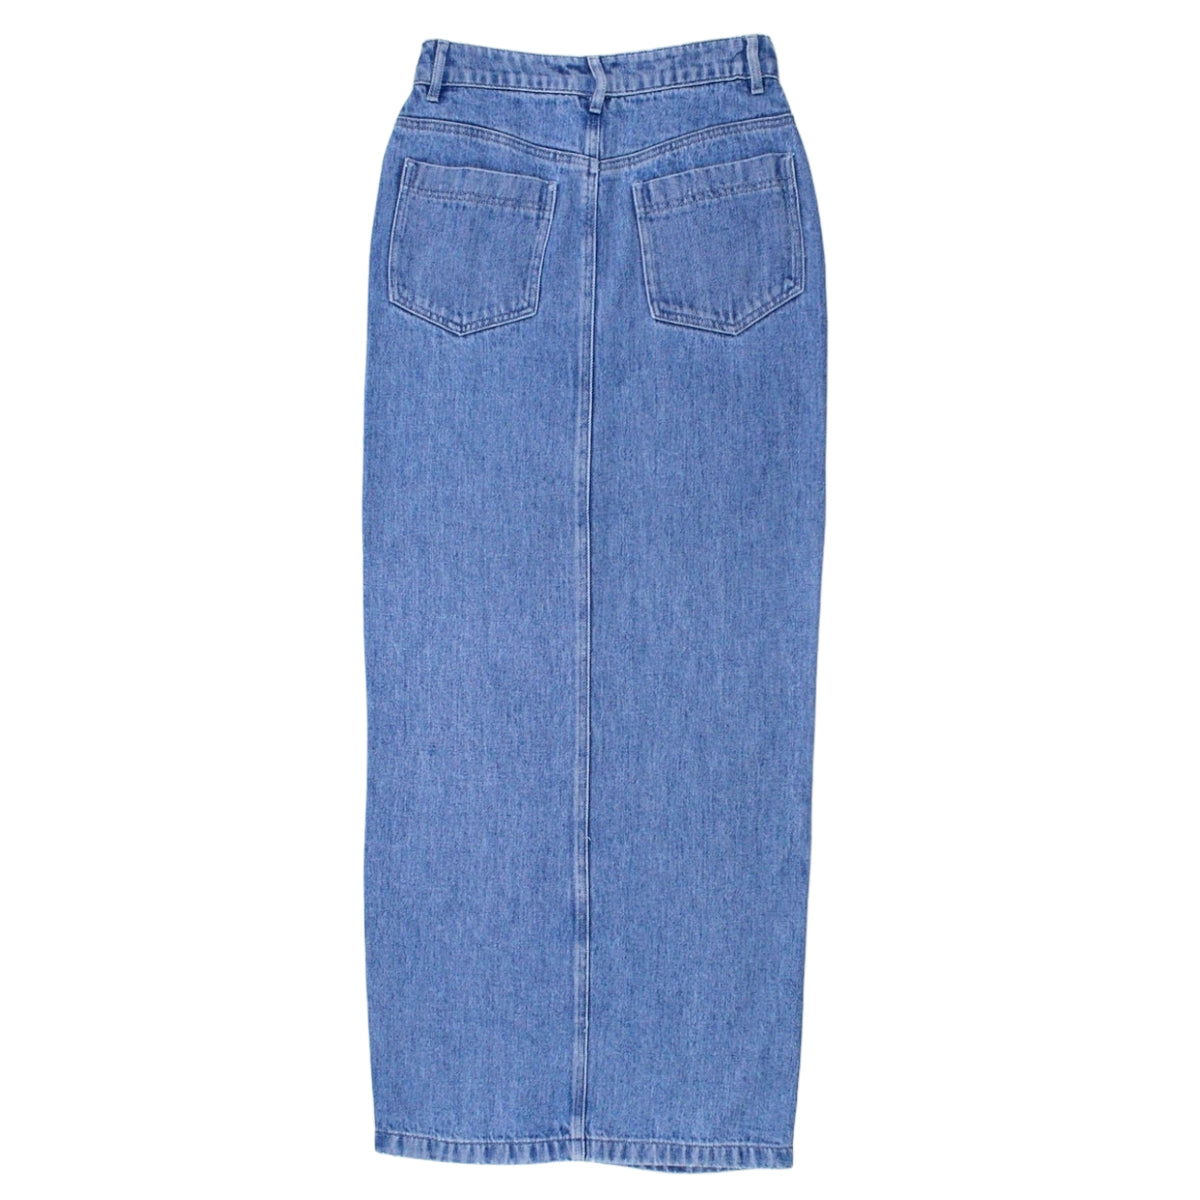 NRBY Blue Denim Maxi Skirt - Sample